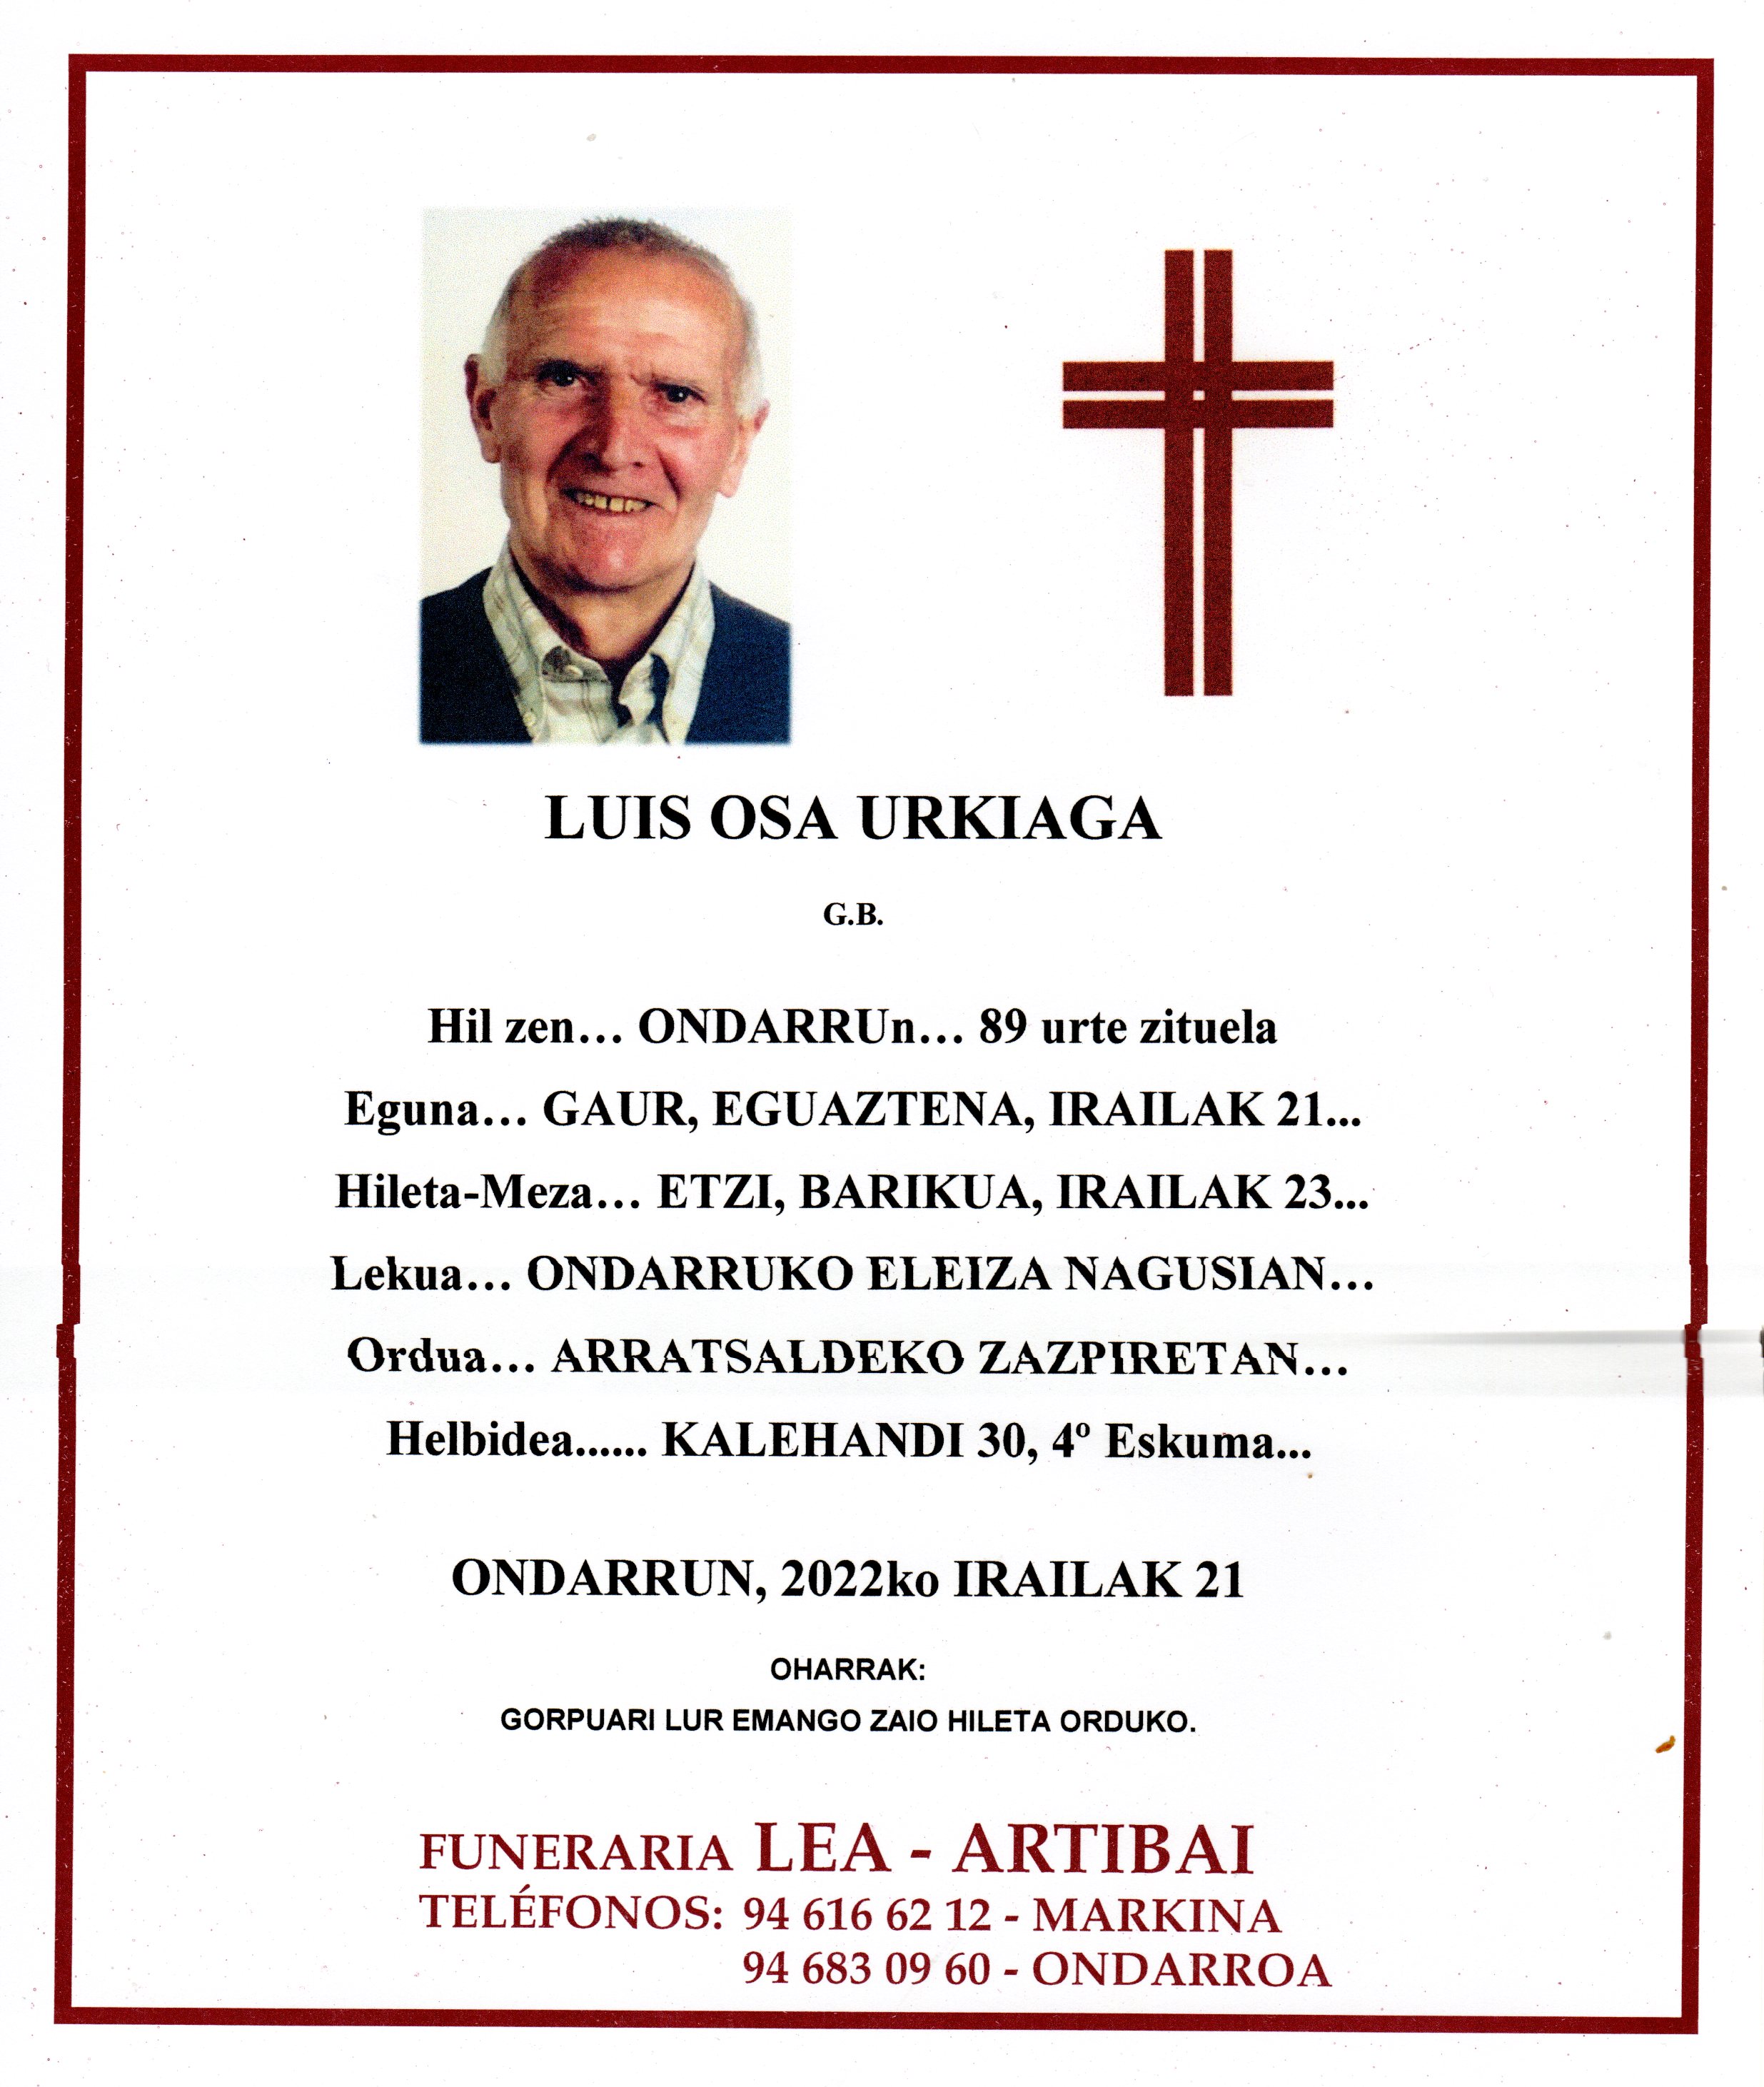 Luis Osa Urkiaga